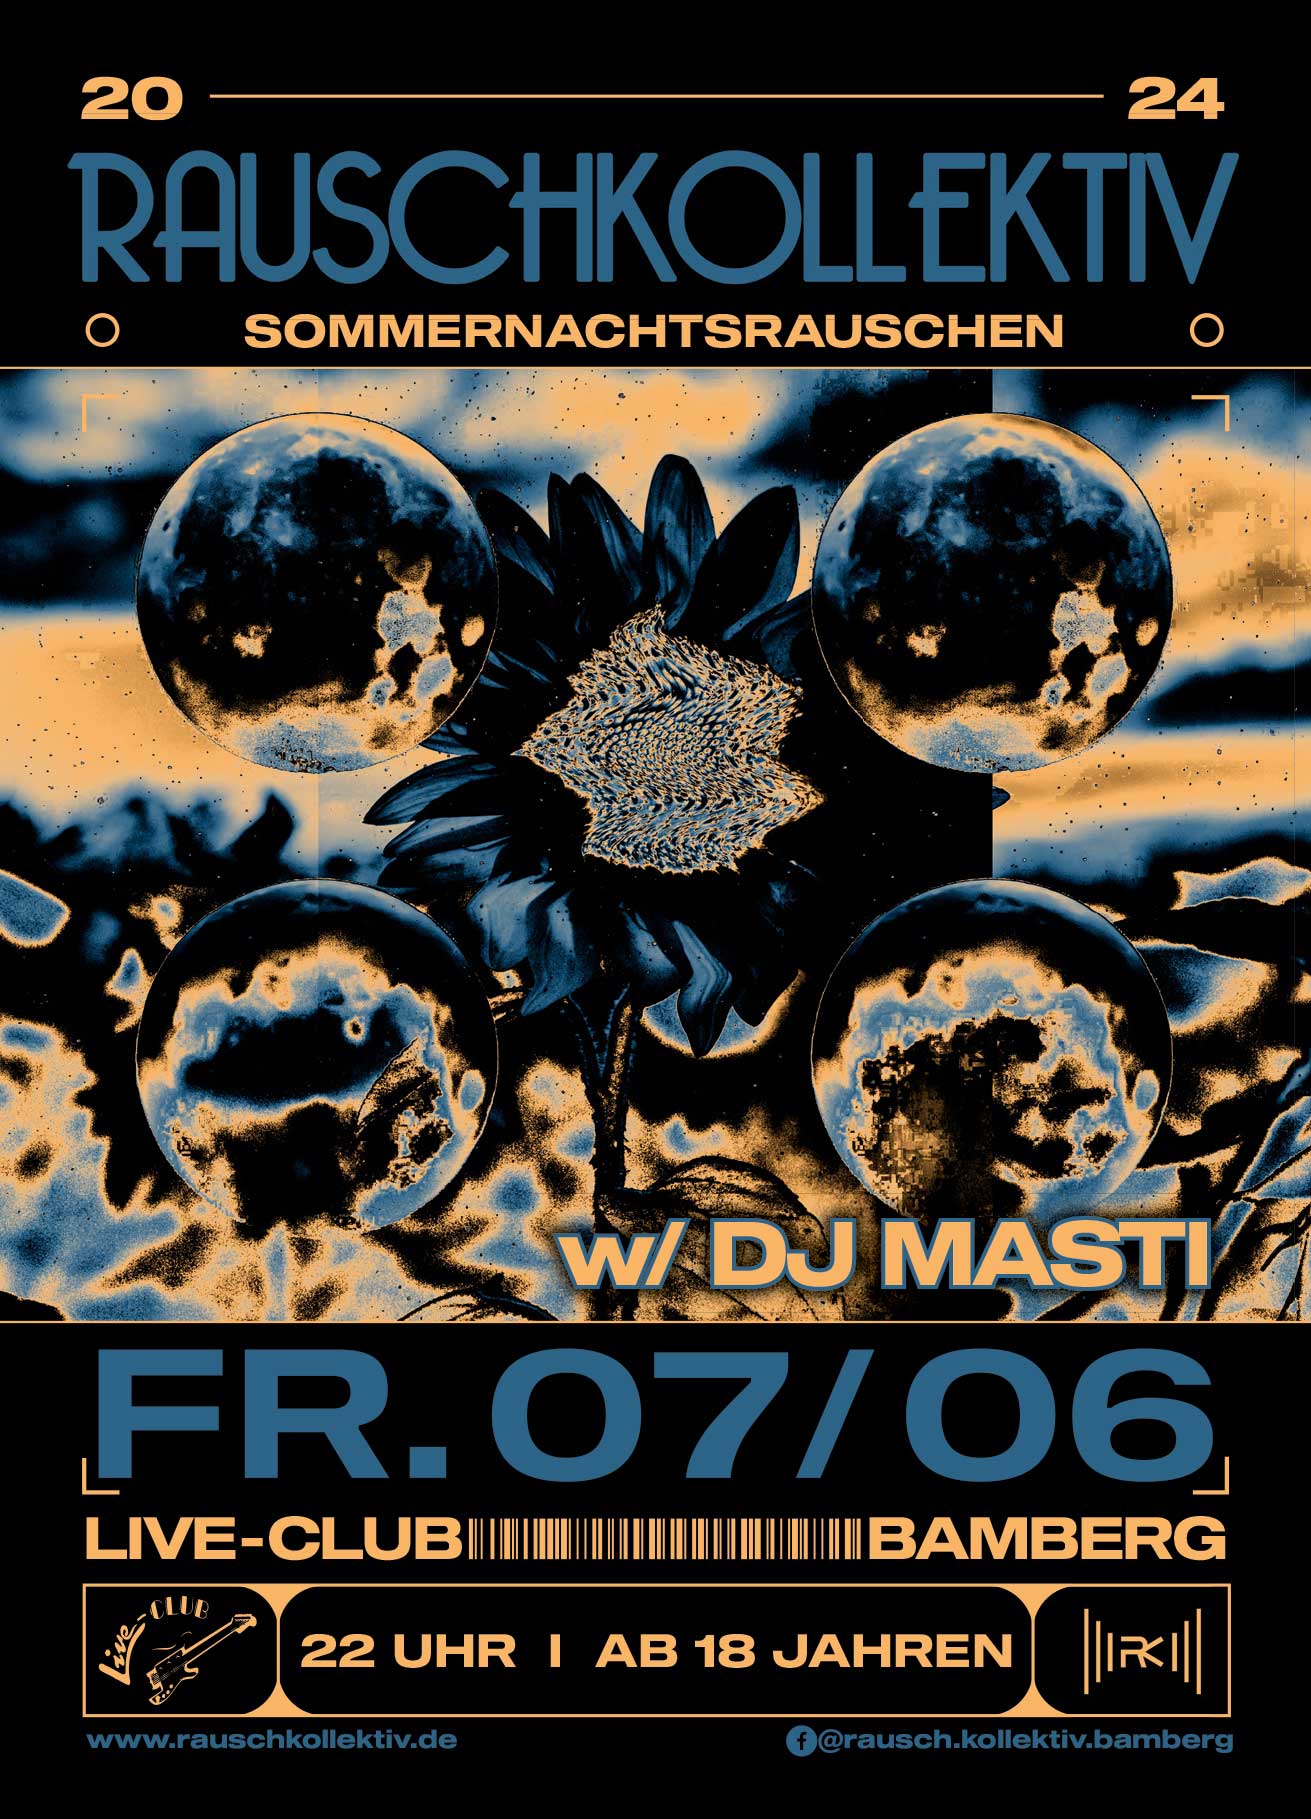 07. Juni 24: Rauschkollektiv - Sommernachtsrauschen mit Masti @ Live-Club